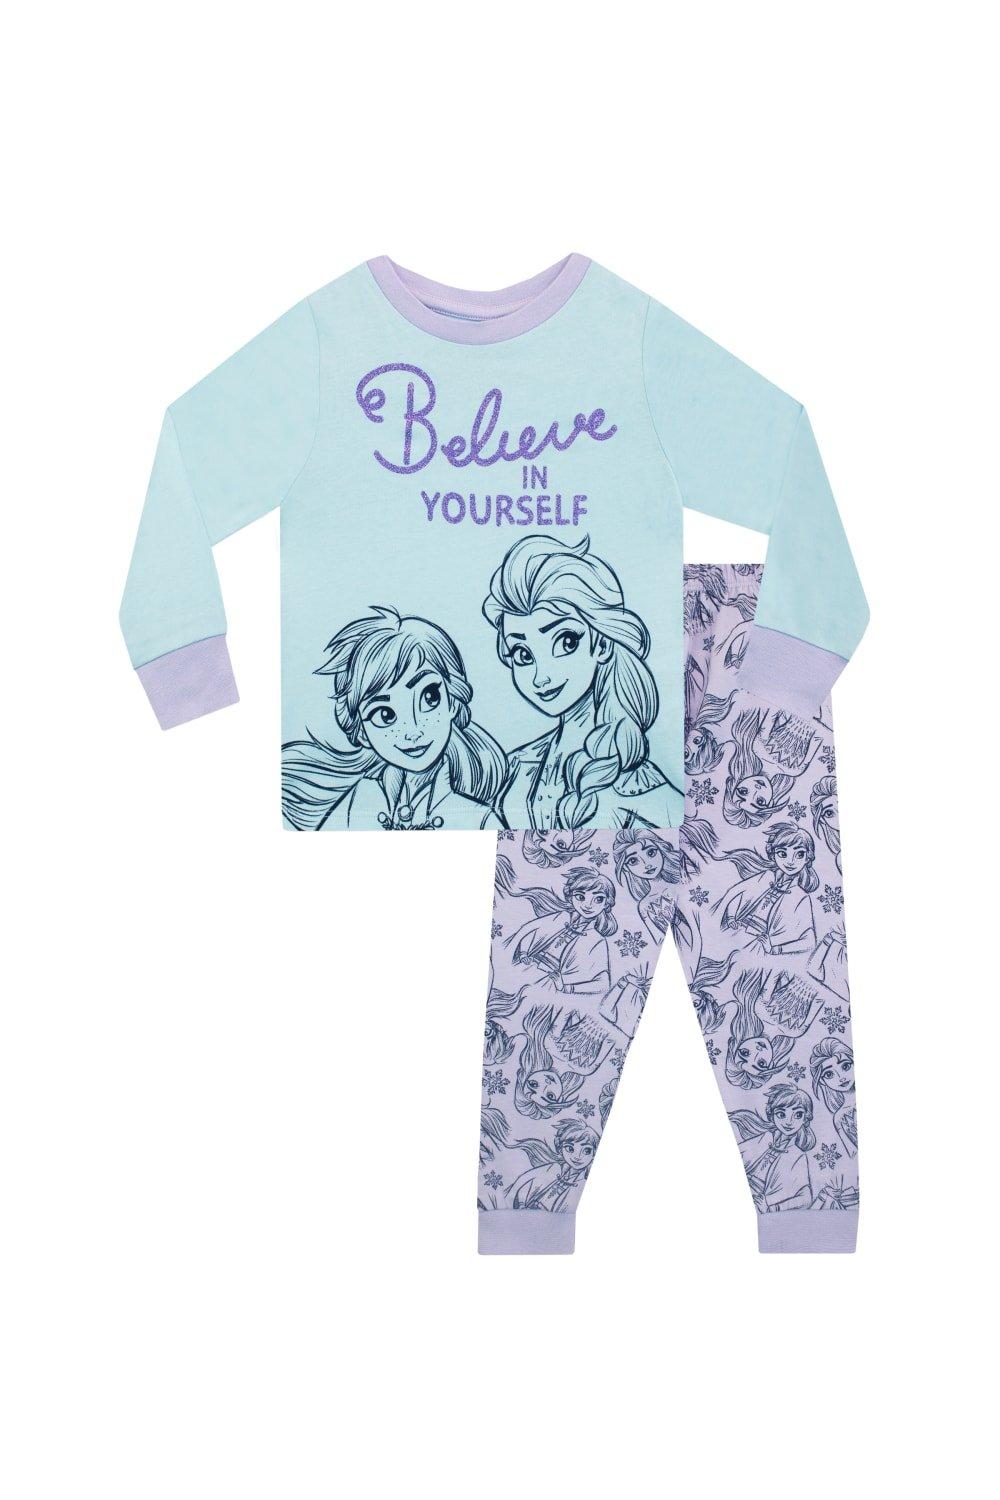 Замороженная пижама Disney, мультиколор копилка для девочек disney с надписью холодное сердце копилка принцессы эльзы контейнер для хранения с паролем безопасная подарочная игр